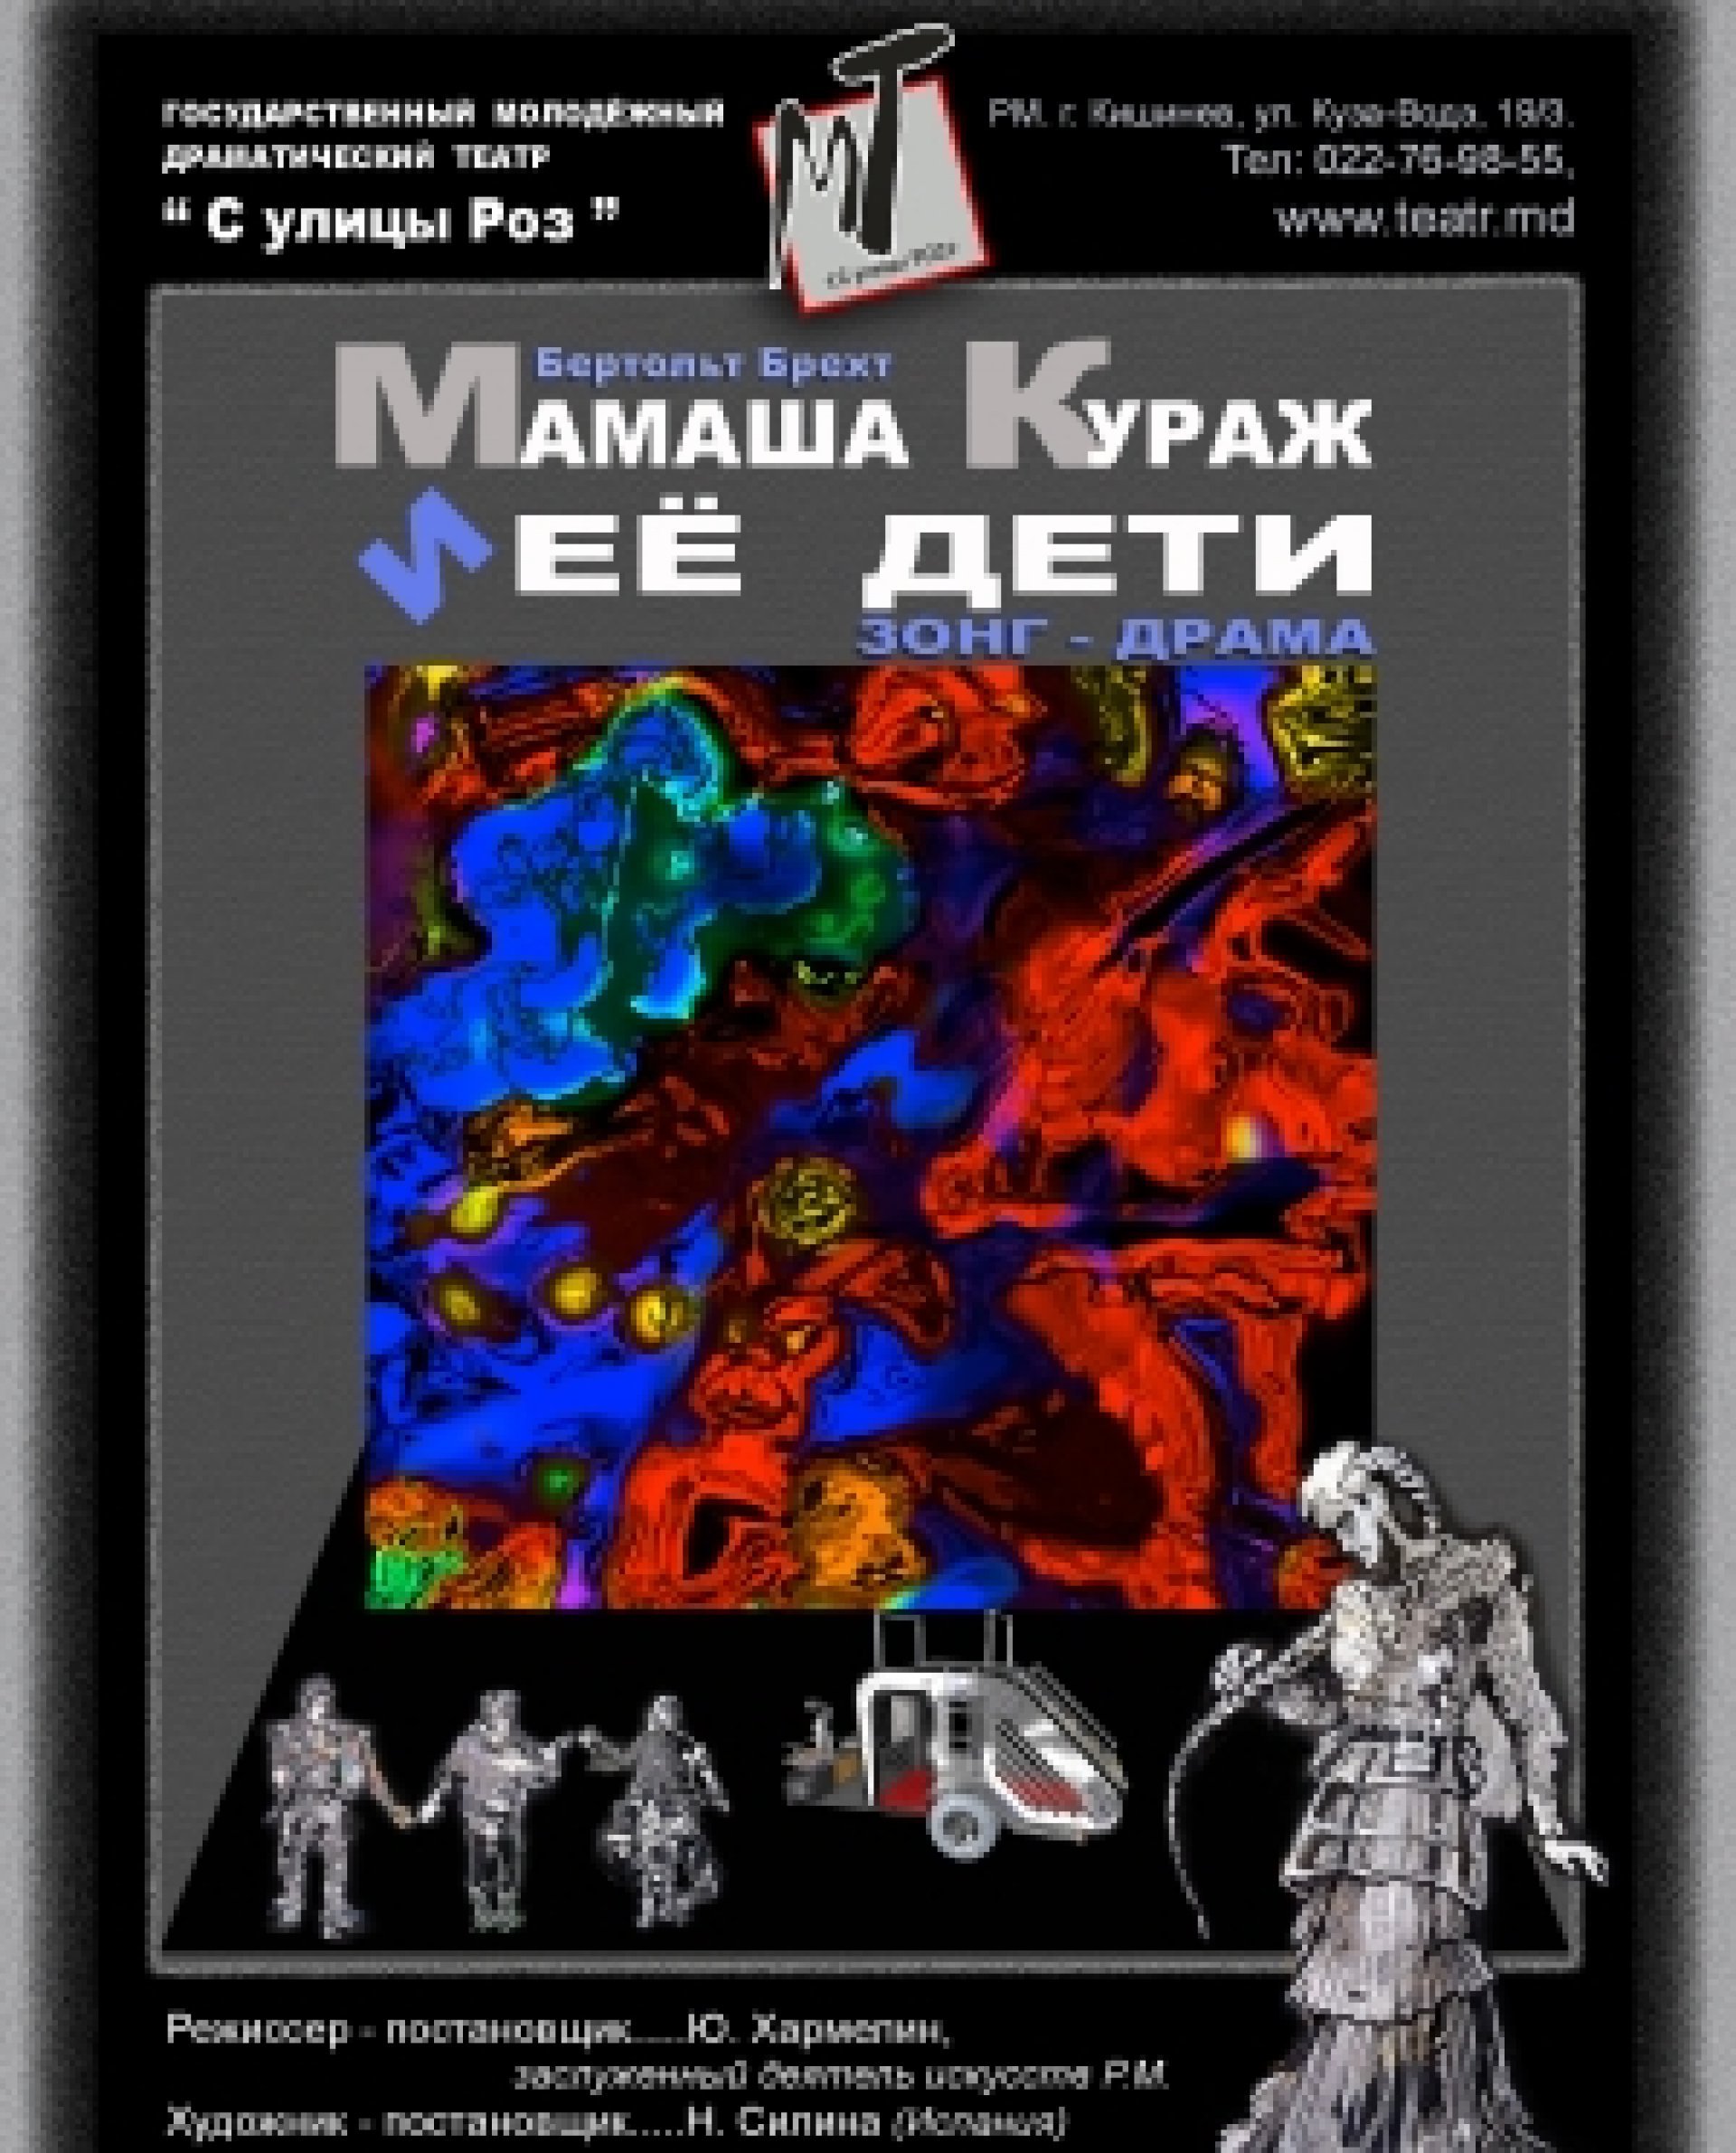 ОТМЕНА - МАМАША КУРАЖ И ЕЕ ДЕТИ - 23.05.21 в 18-00